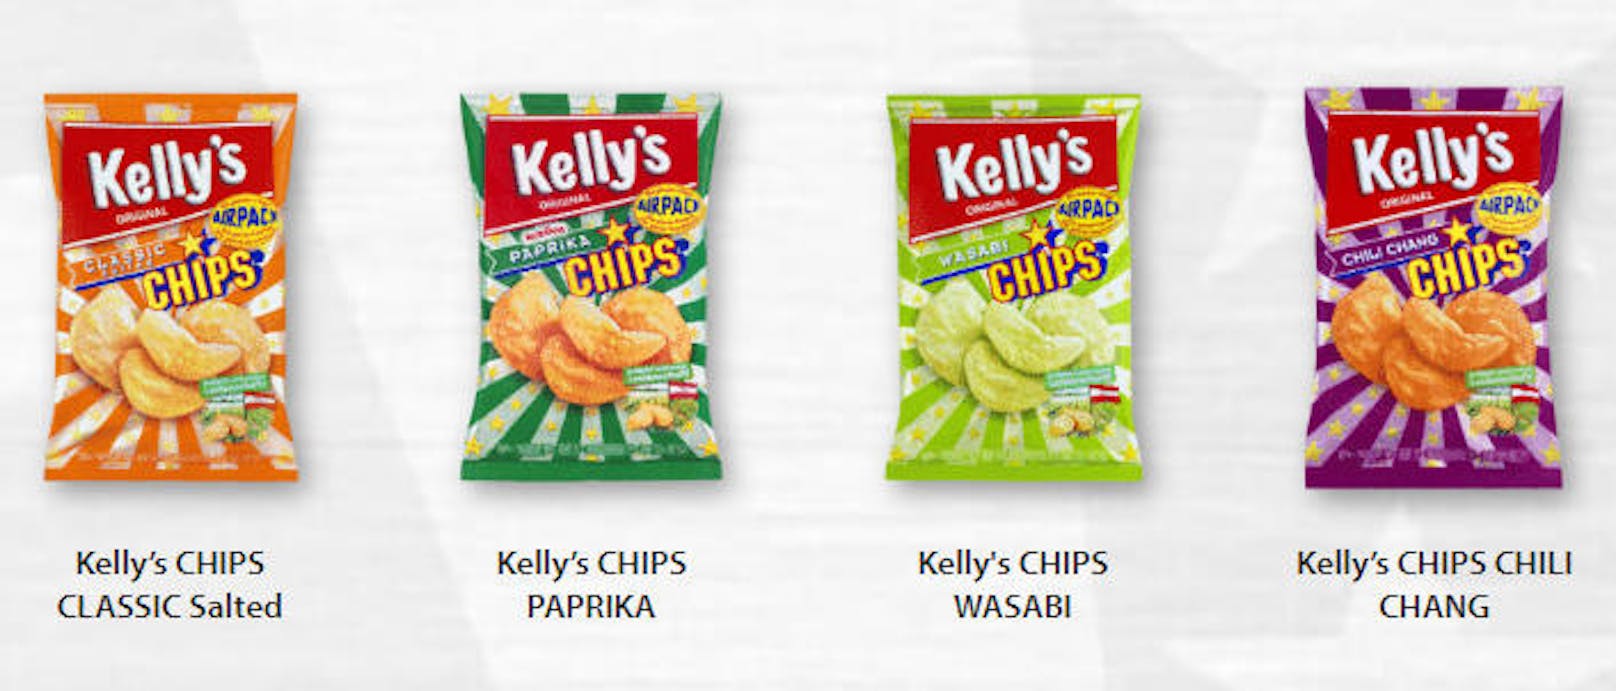 Auch die Marke "Kelly's" bietet islamkonforme Halal-Chips an. Sie haben das "Halal Zertifikat" auf der Verpackung